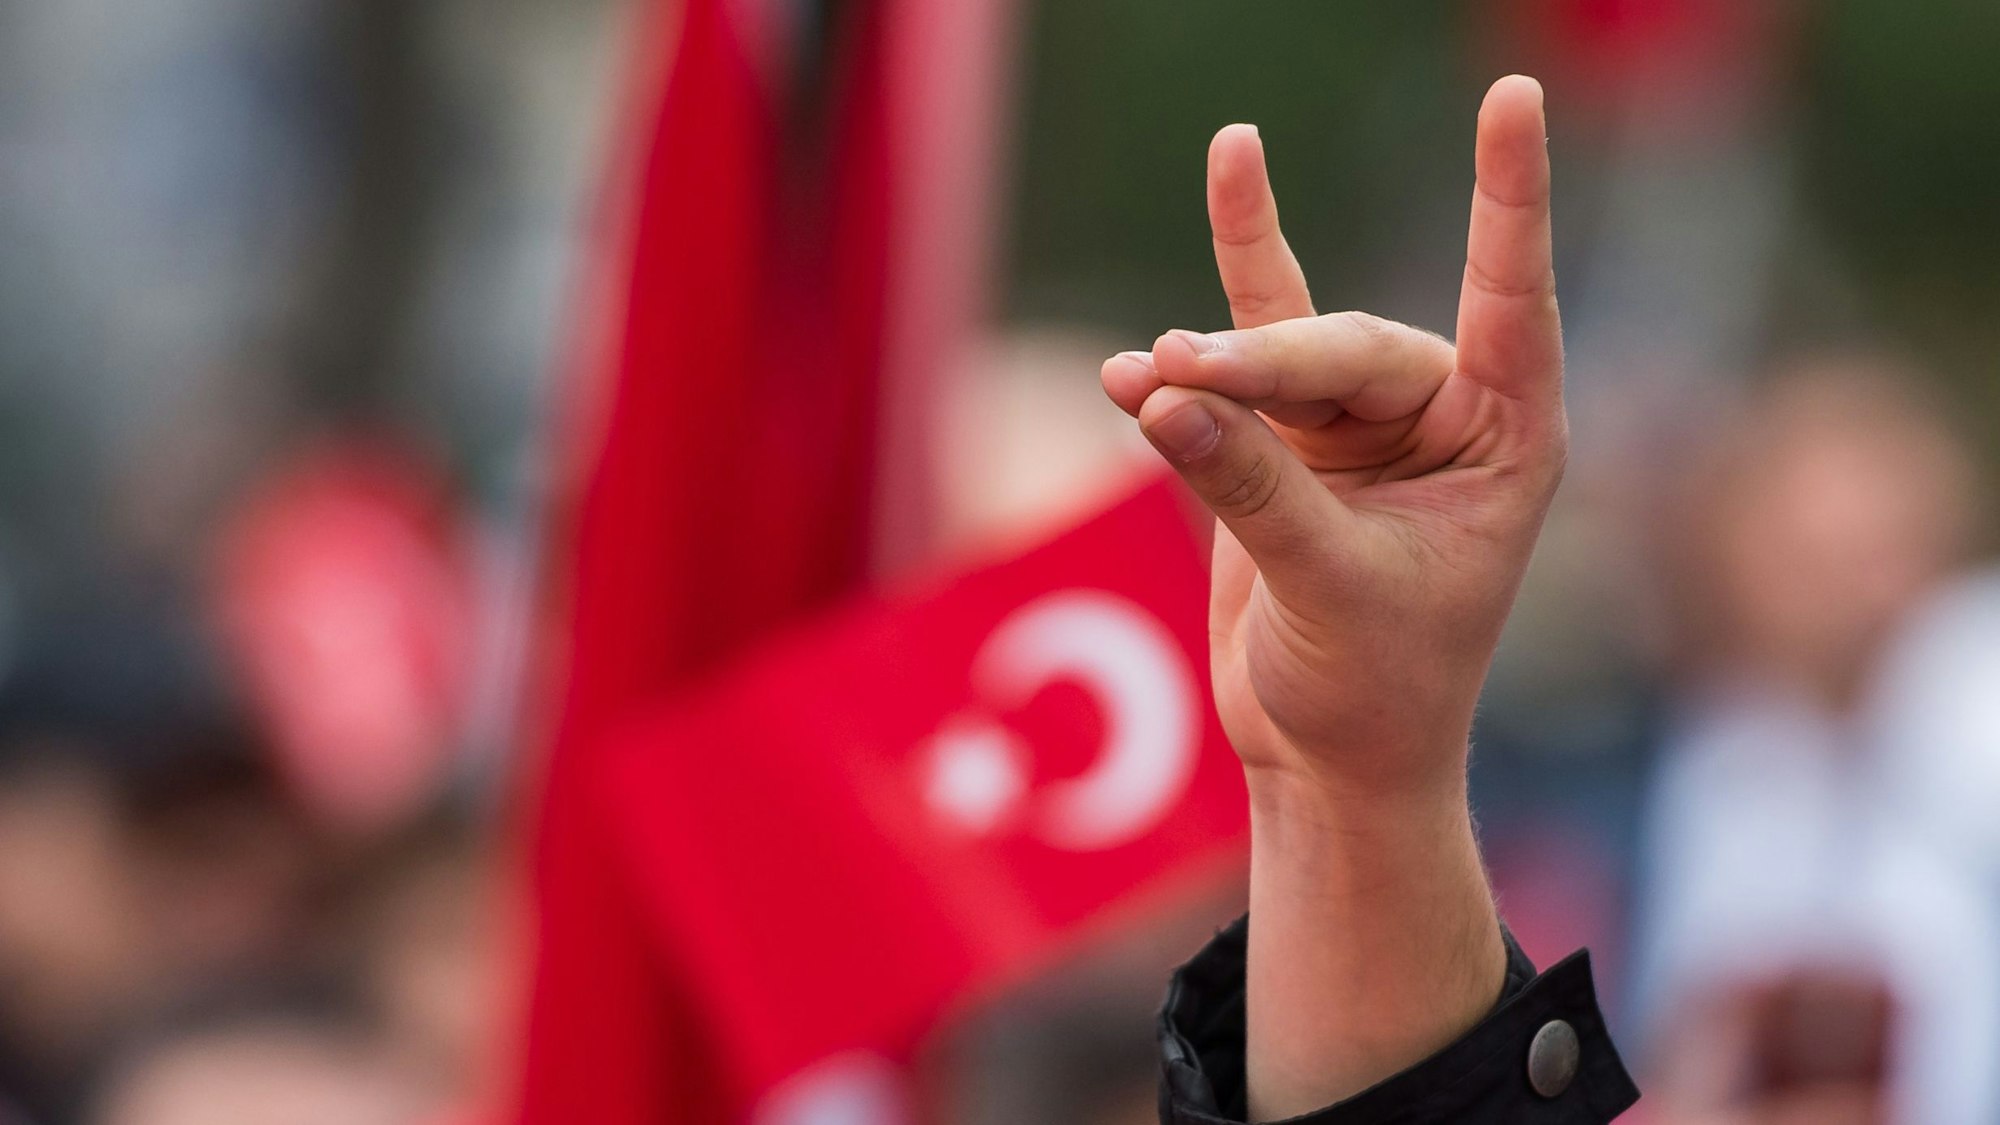 Eine Hand zeigt den „Wolfsgruß“ der Grauen Wölfe während einer Pro-Türkischen Demonstration. Graue Wölfe ist die Bezeichnung für die ultranationalistische Bewegung aus der Türkei.